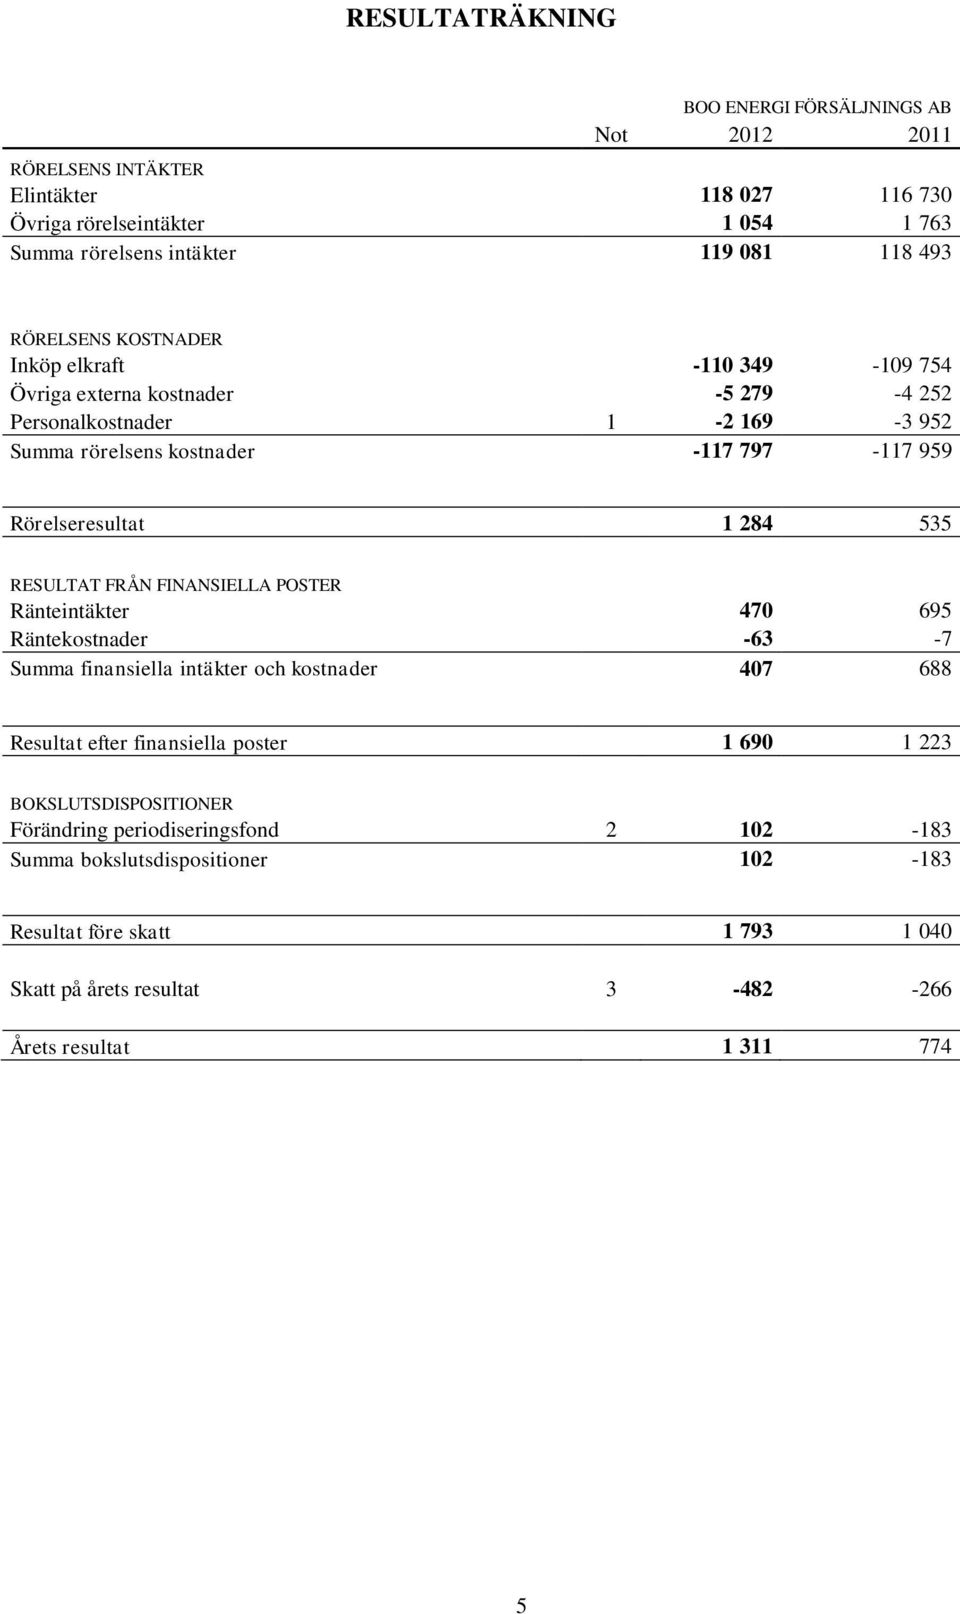 RESULTAT FRÅN FINANSIELLA POSTER Ränteintäkter 470 695 Räntekostnader -63-7 Summa finansiella intäkter och kostnader 407 688 Resultat efter finansiella poster 1 690 1 223